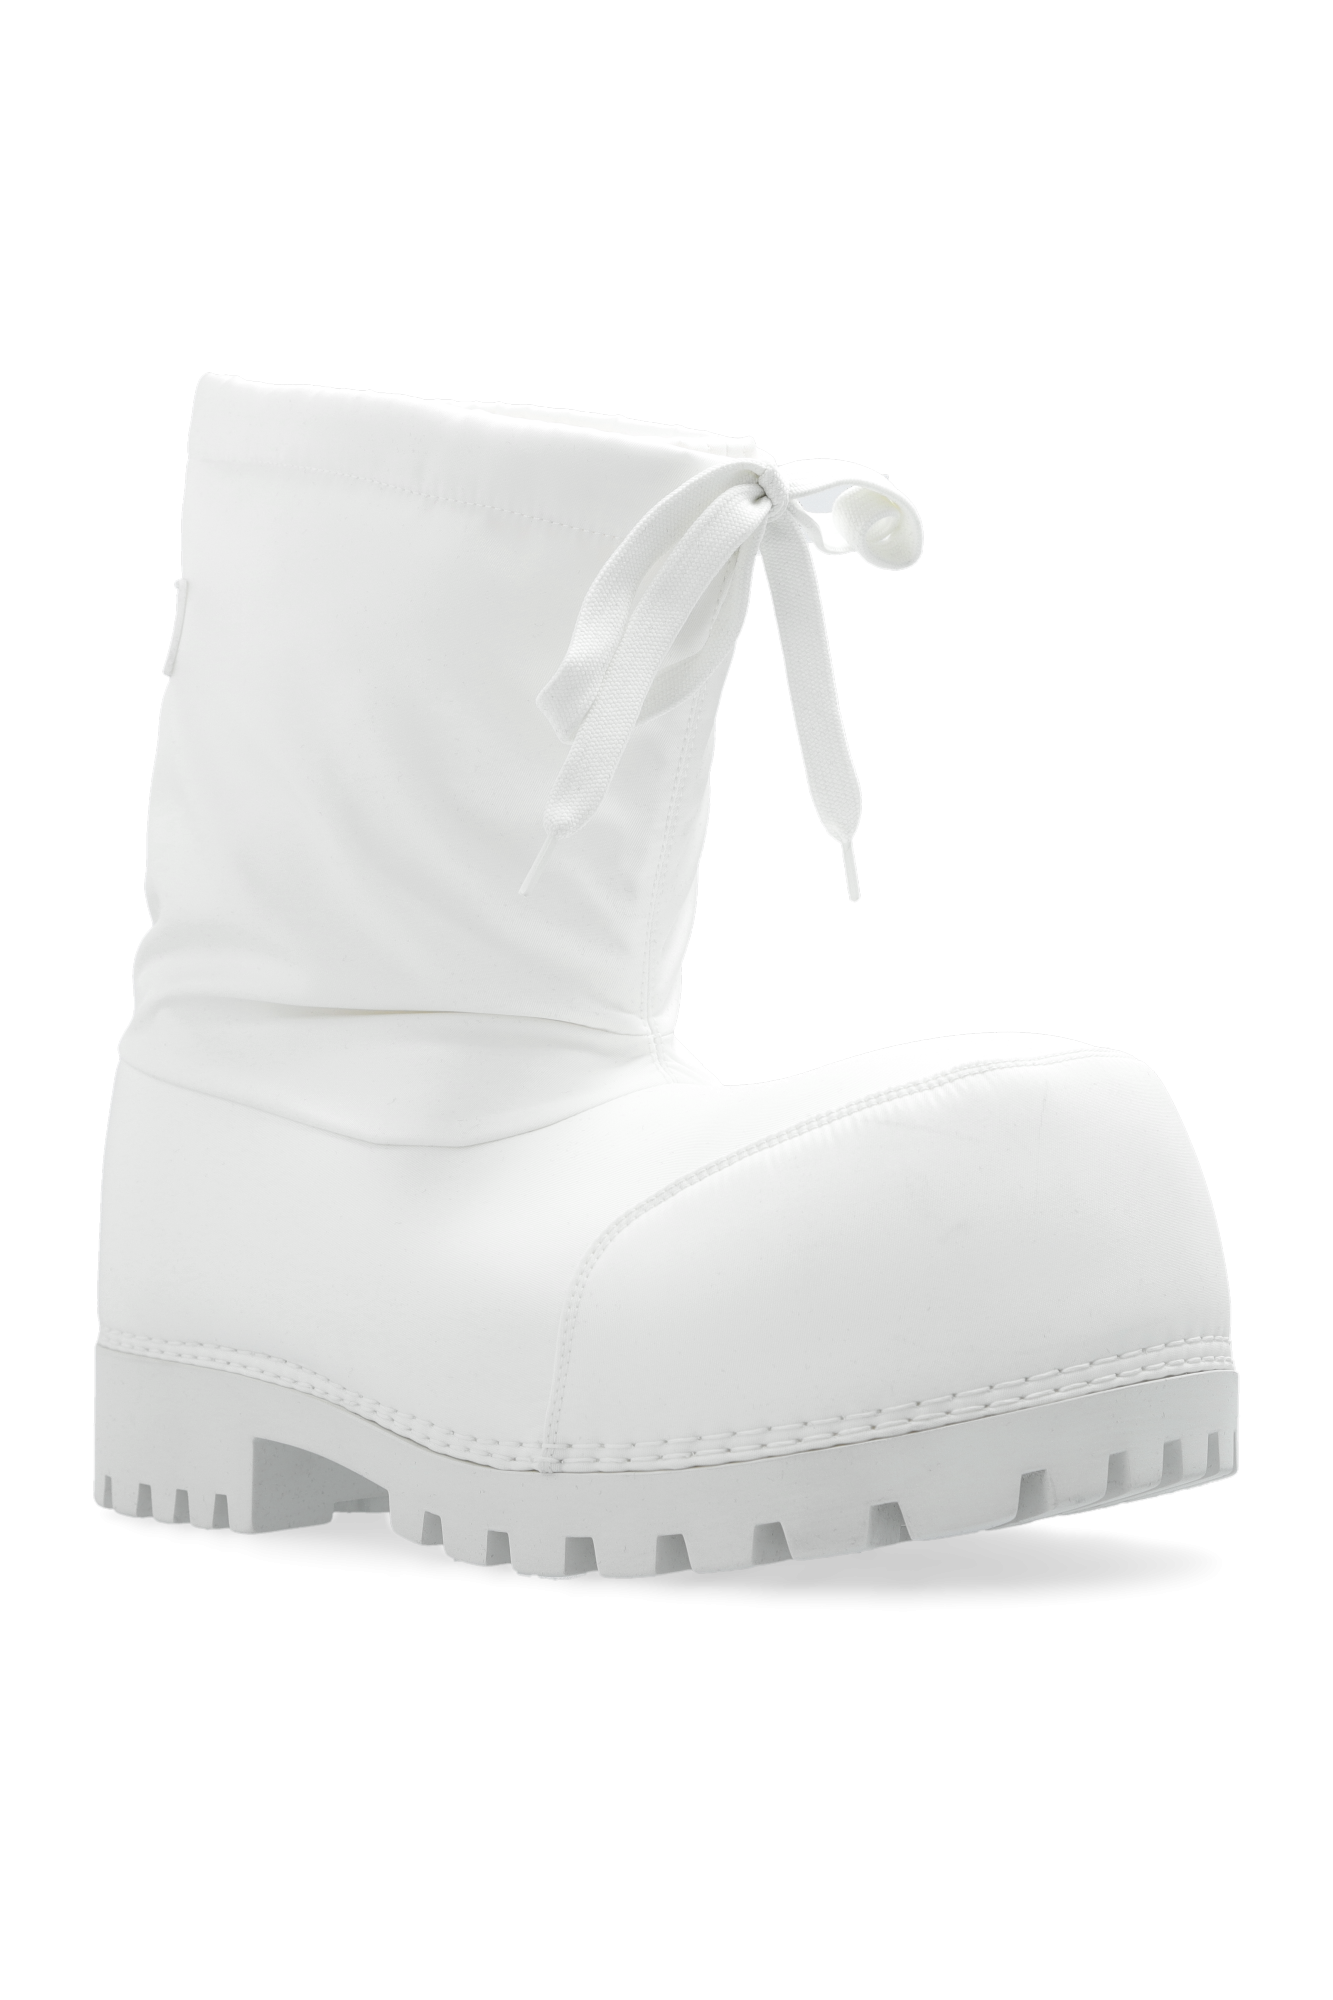 Balenciaga ‘Alasca Low’ snow boots